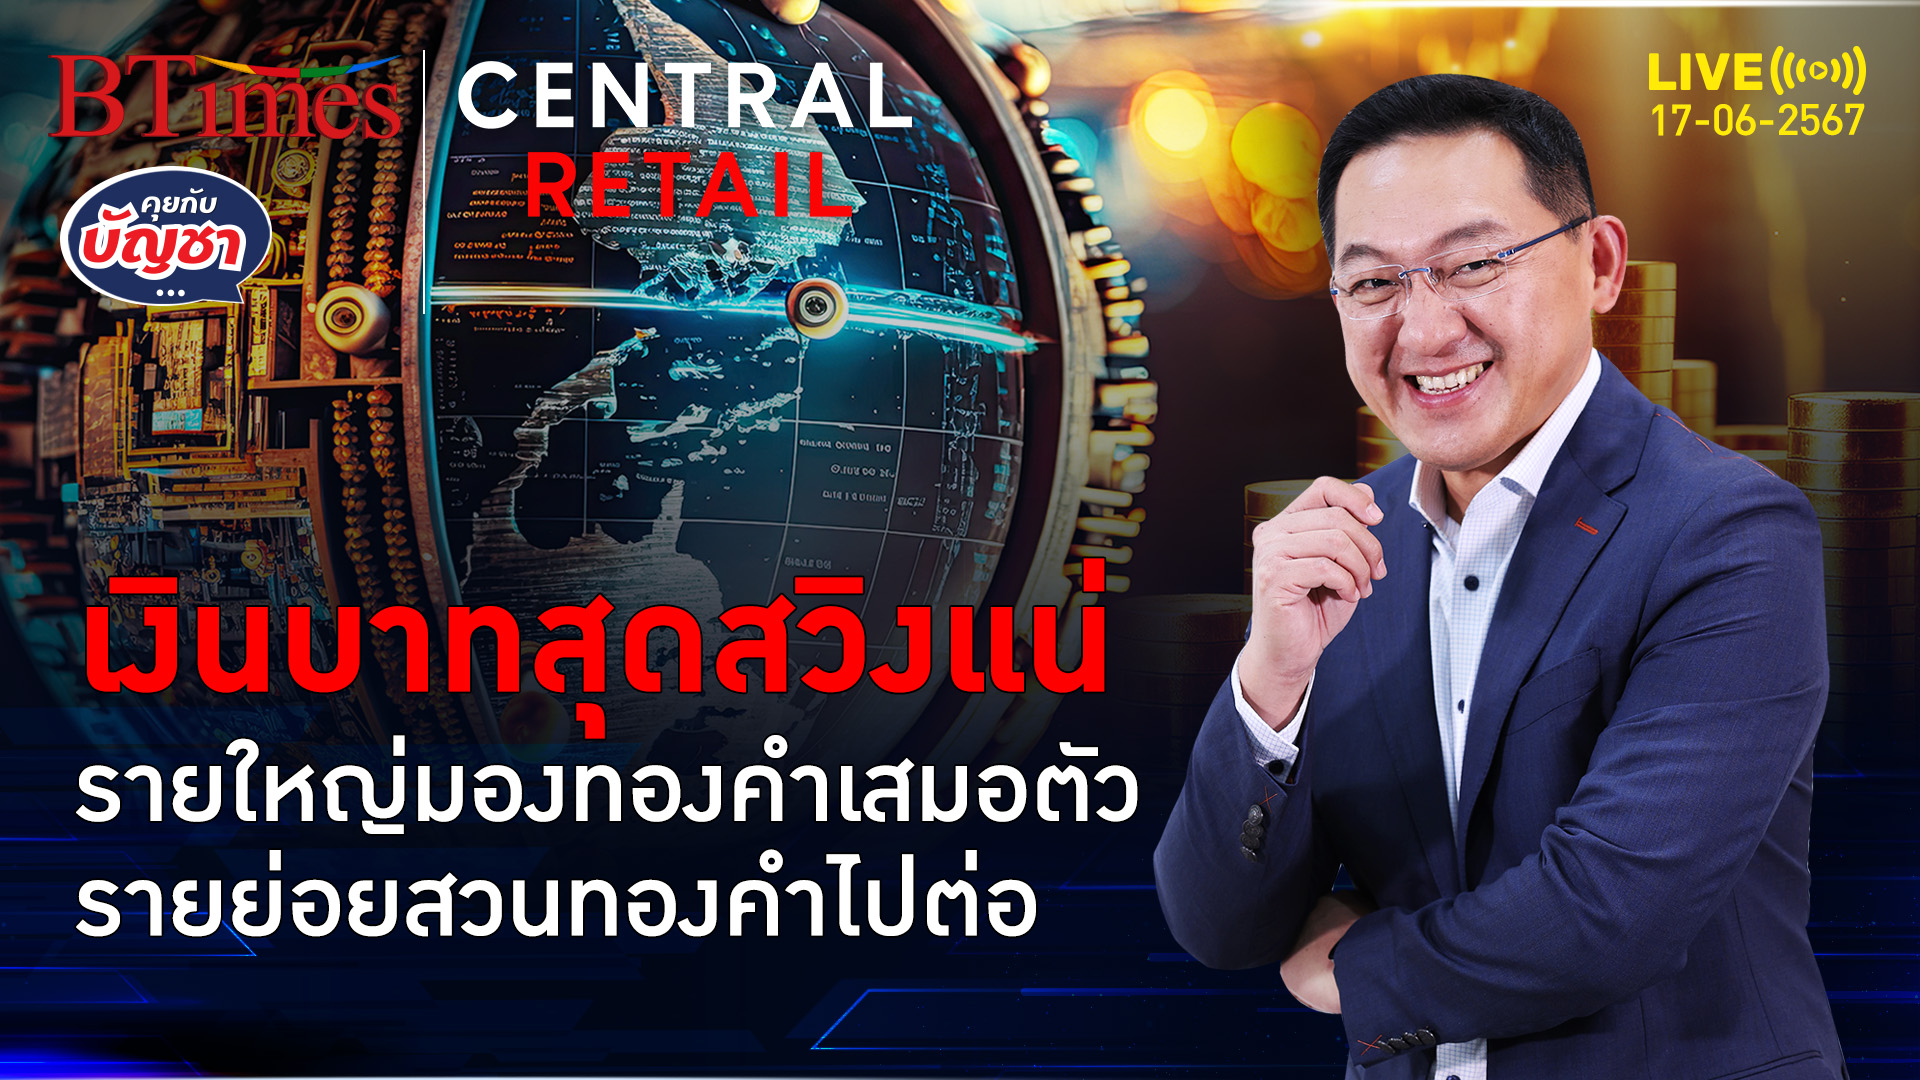 สัปดาห์นี้ระวังเงินบาท การเมืองไทยสุดเสี่ยง ทองคำไทยมีนิ่งถึงร่วง | คุยกับบัญชา l 17 มิ.ย. 67